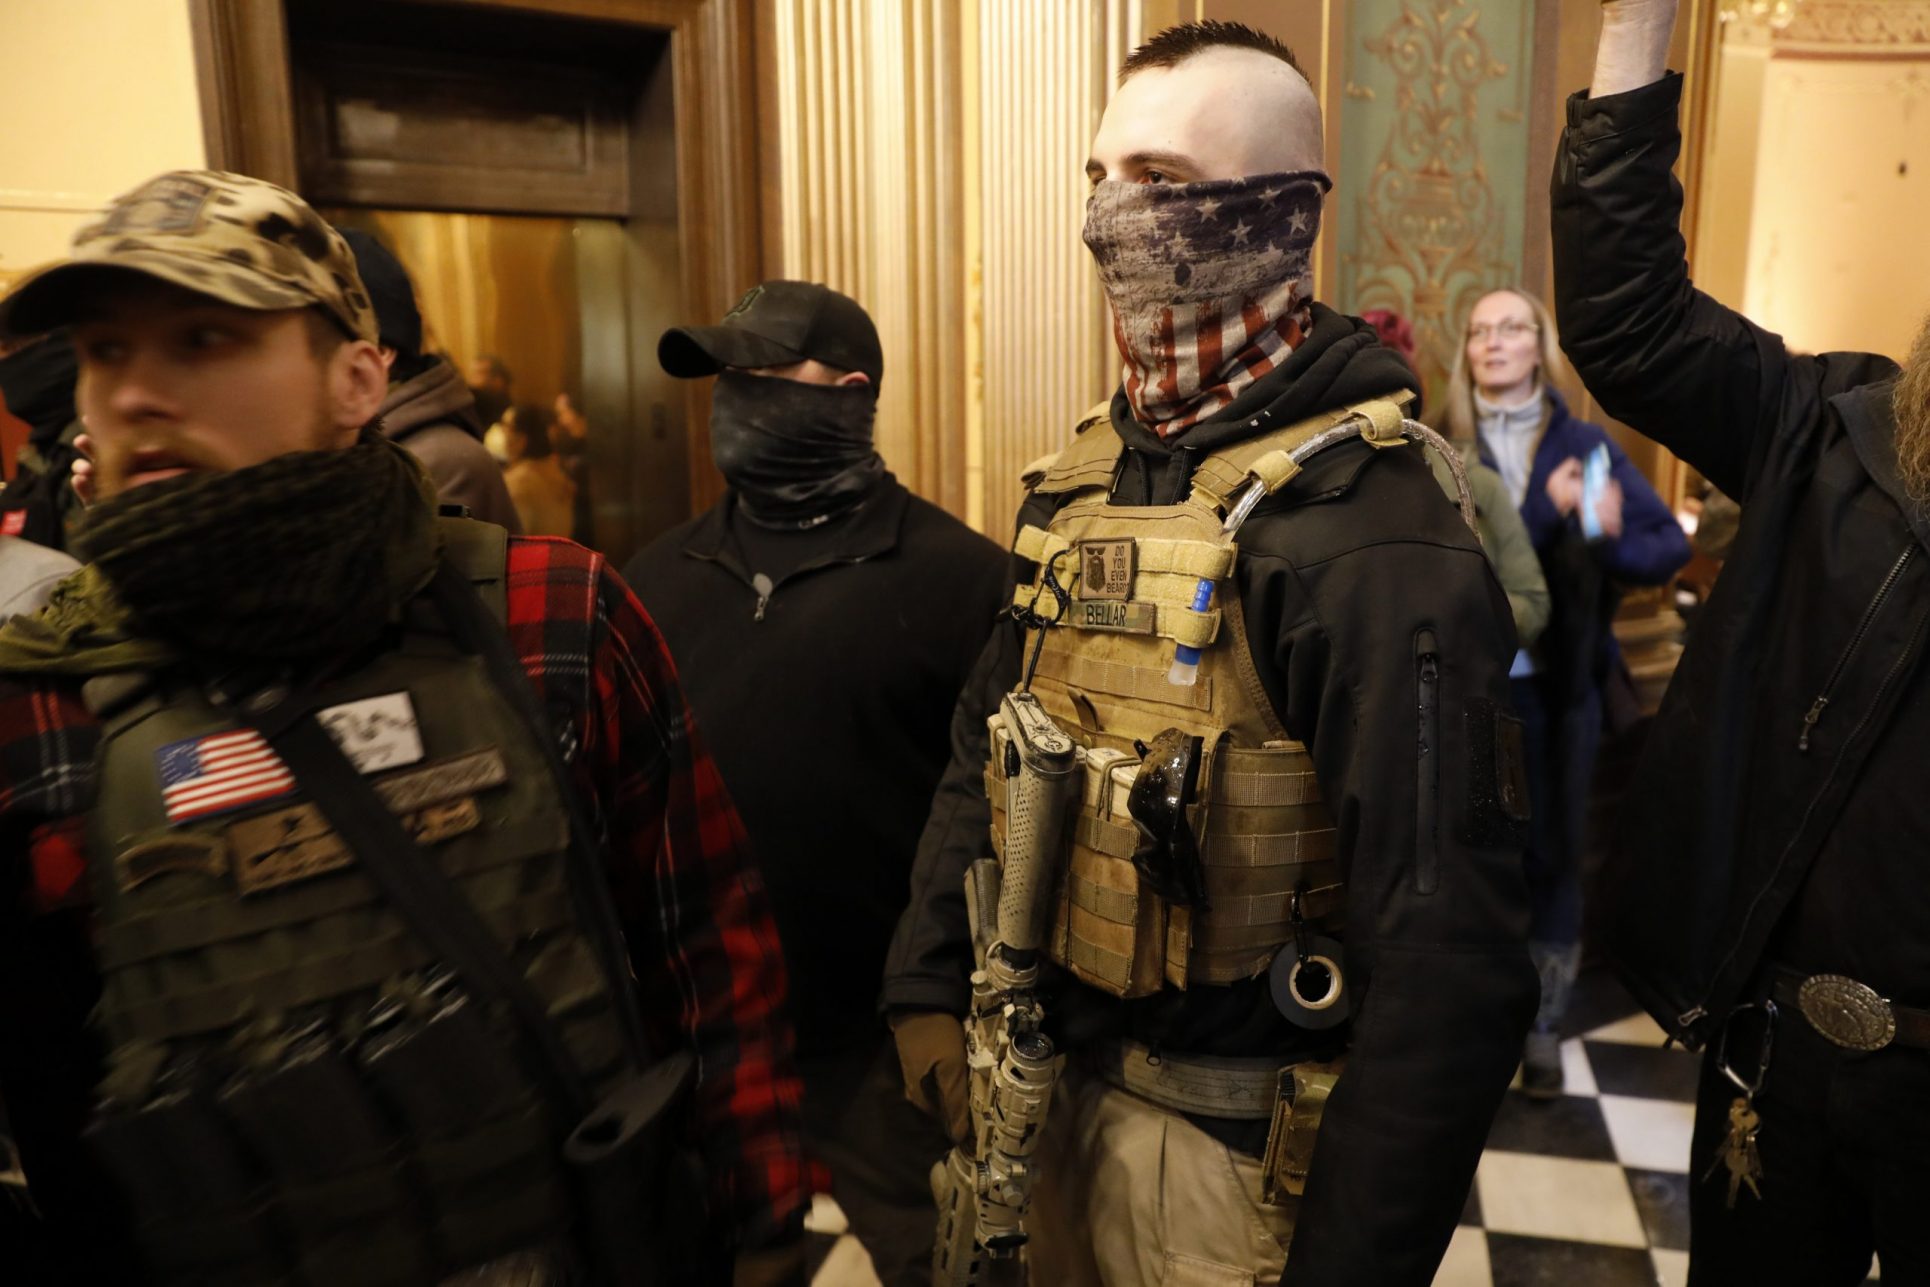 Manifestantes armados ingresan al legislativo de Michigan para exigir el fin del confinamiento